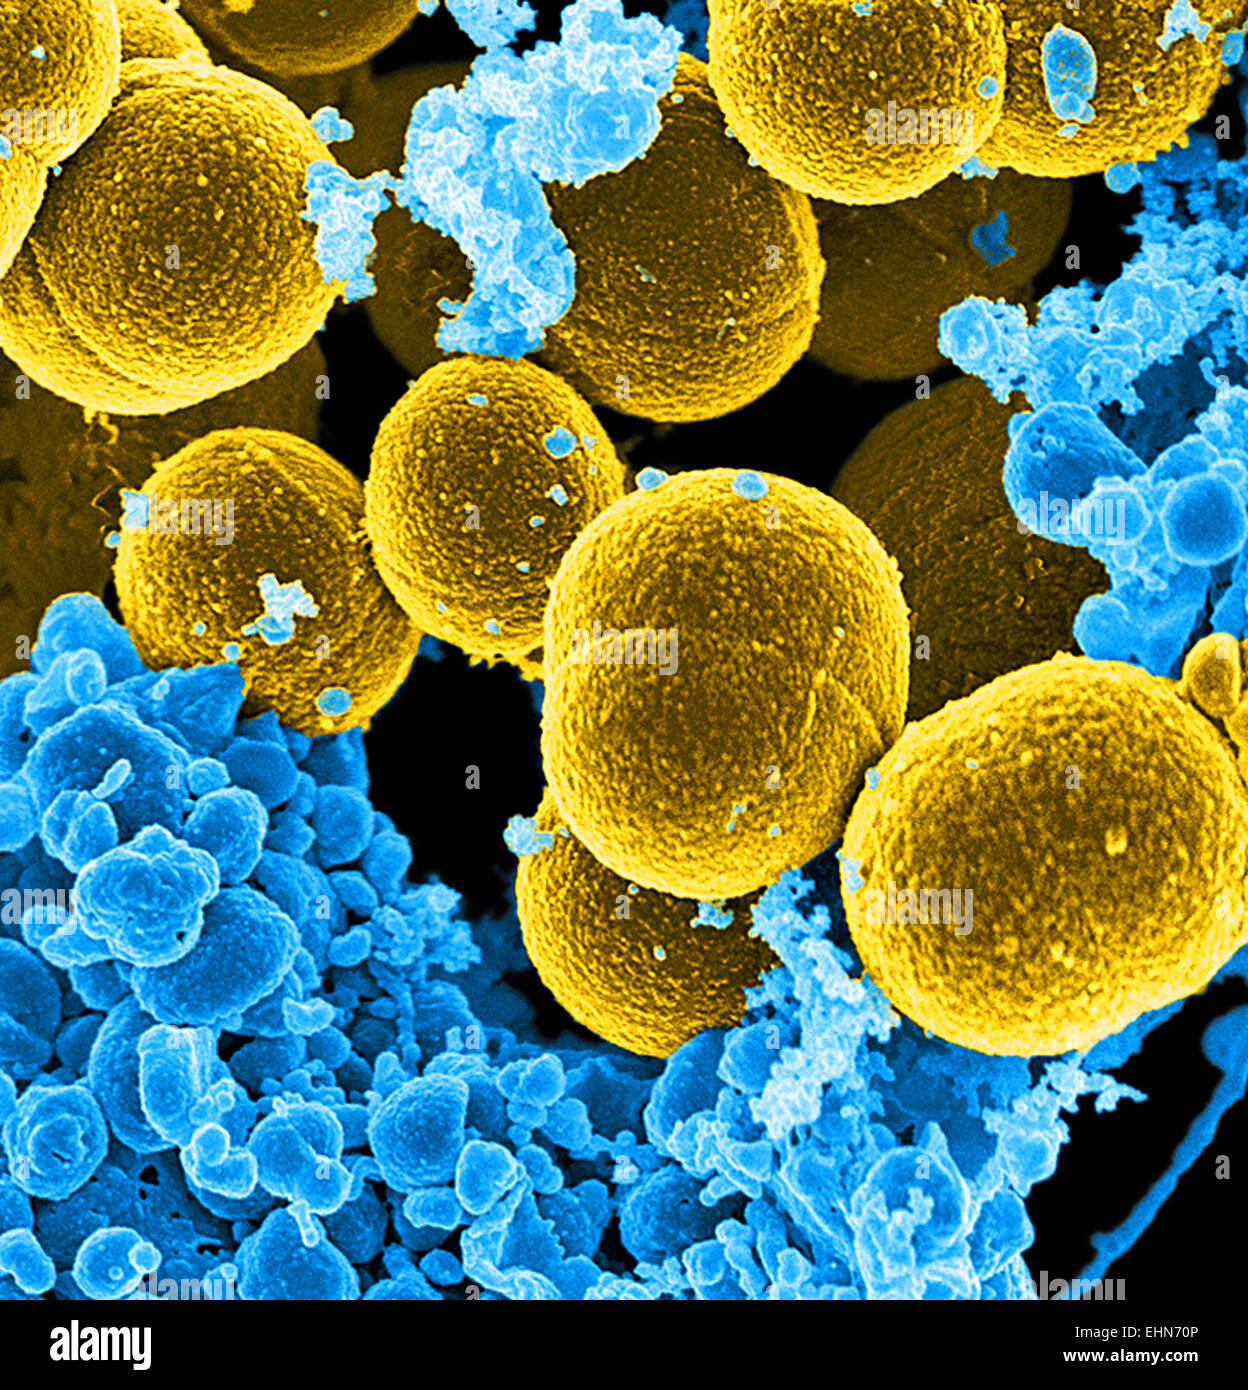 Color análisis micrografía de electrones (SEM) de Staphylococcus aureus meticilino-resistente (SAMR) bacterias. Foto de stock